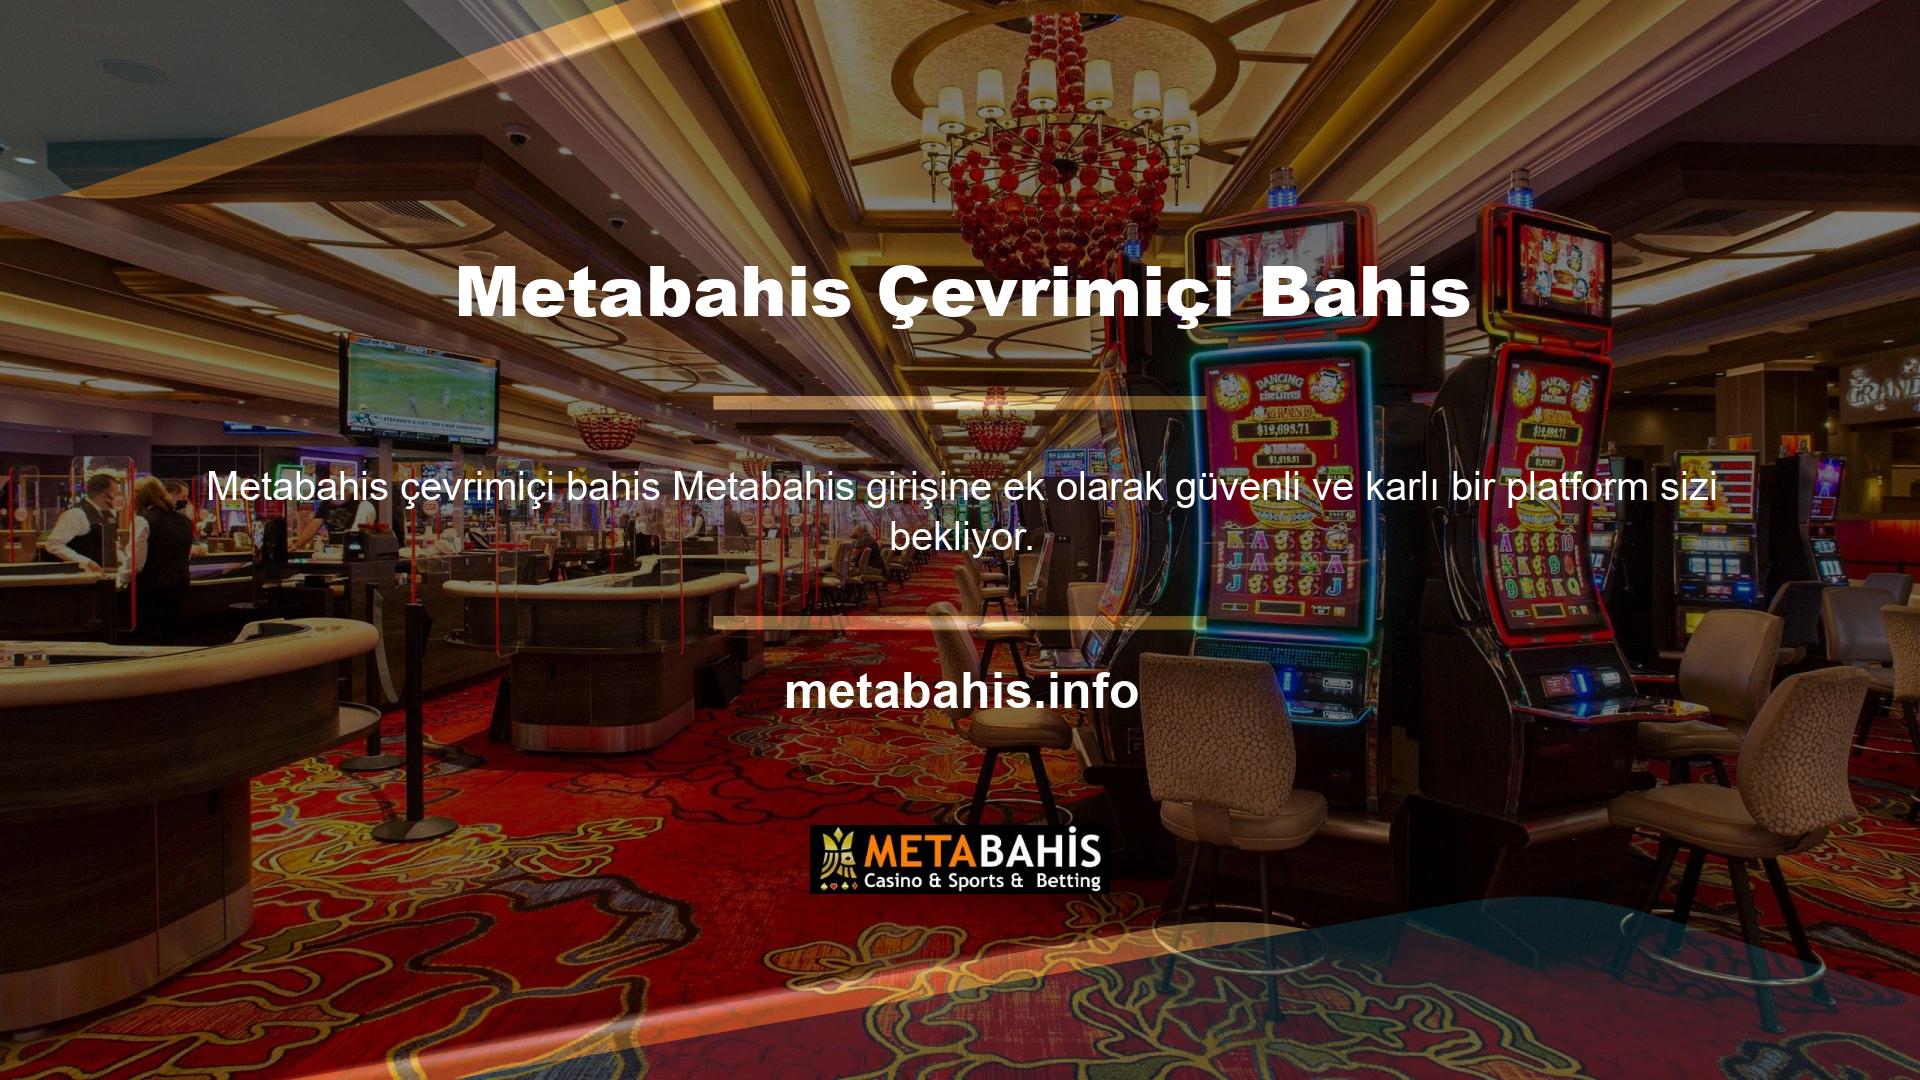 Metabahis web sitesinde canlı bahis, canlı casino, piyango, sanal spor, slot oyunları ve birçok alternatif içerikten para kazanabilirsiniz